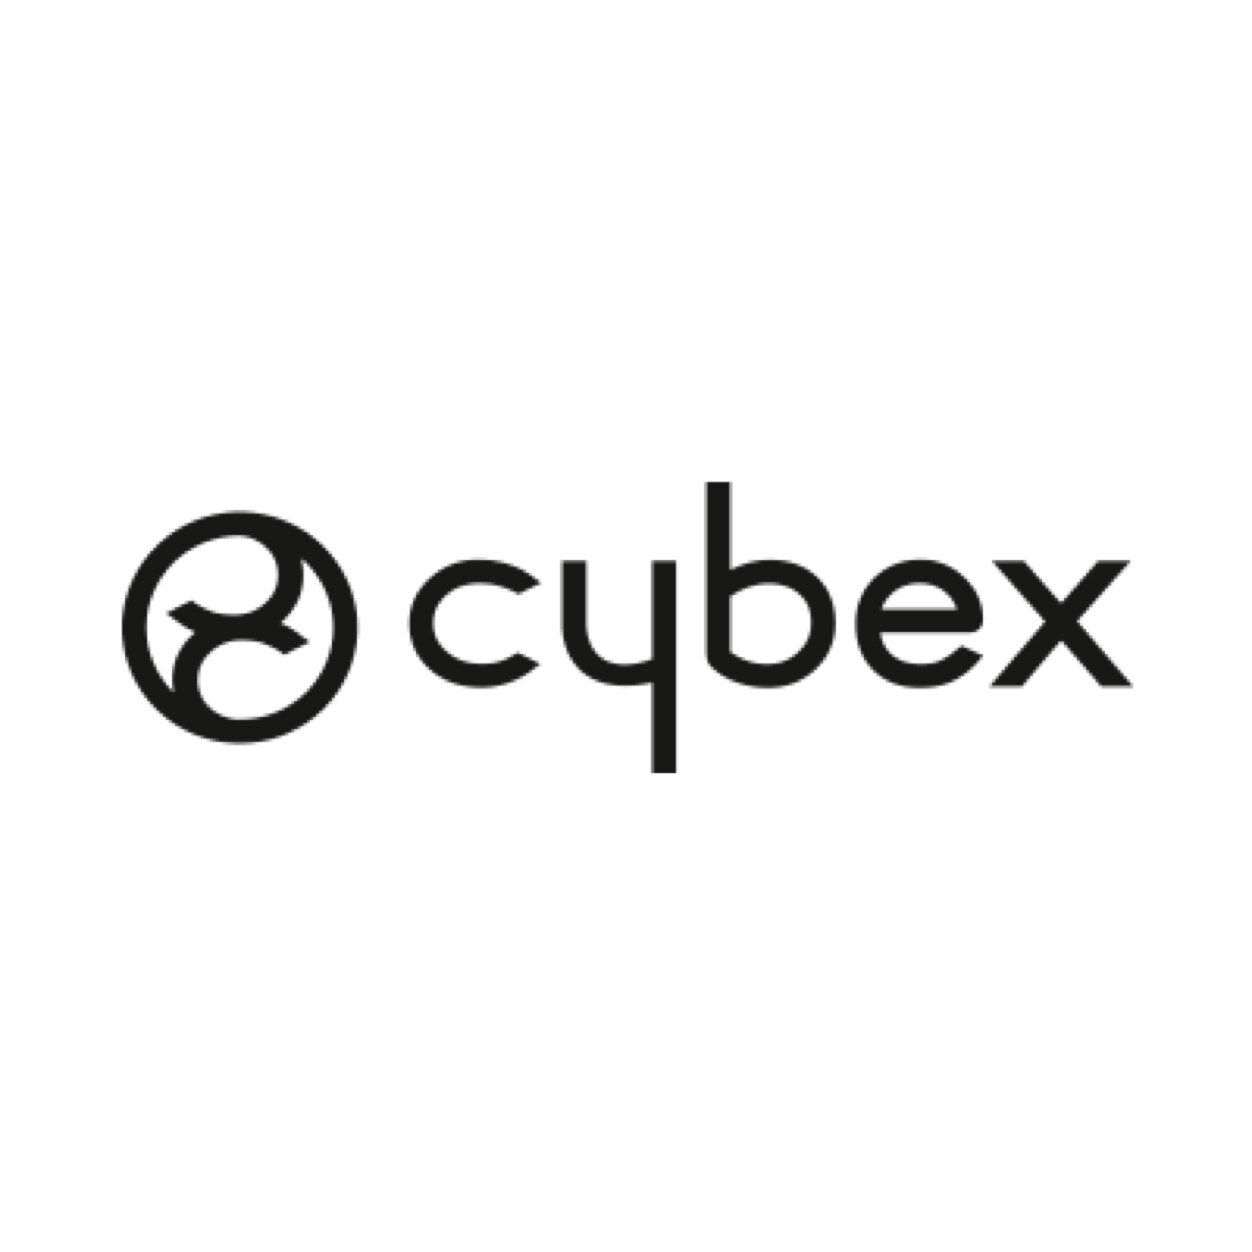 CYBEX GLOBAL